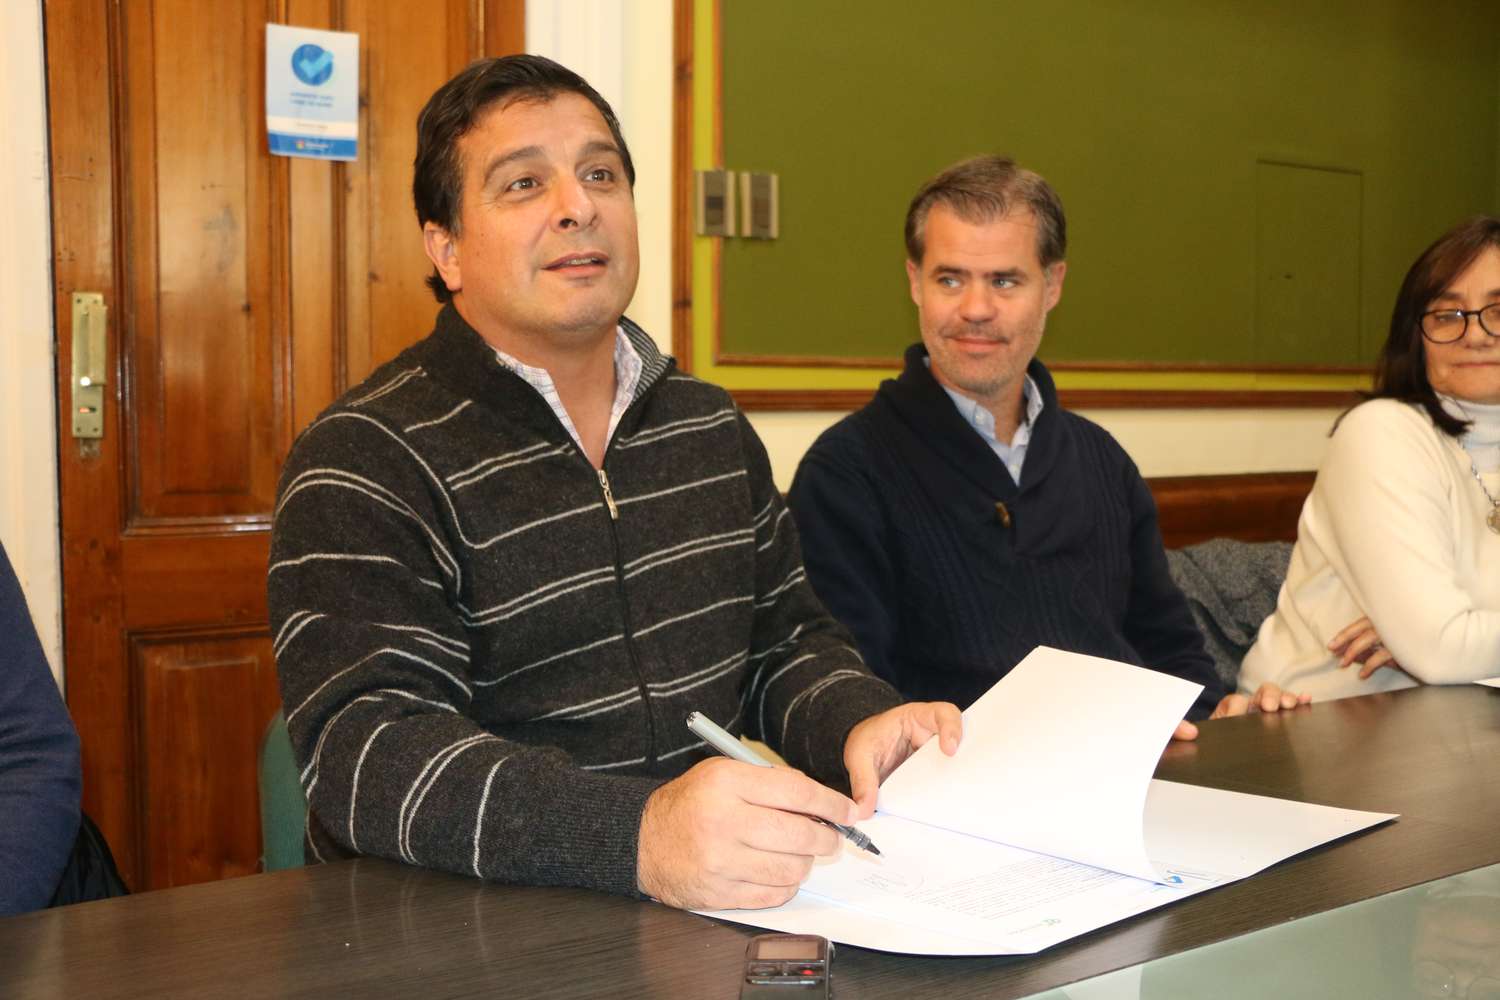 Piaggio y Casaretto firmaron el contrato de obra para 38 viviendas